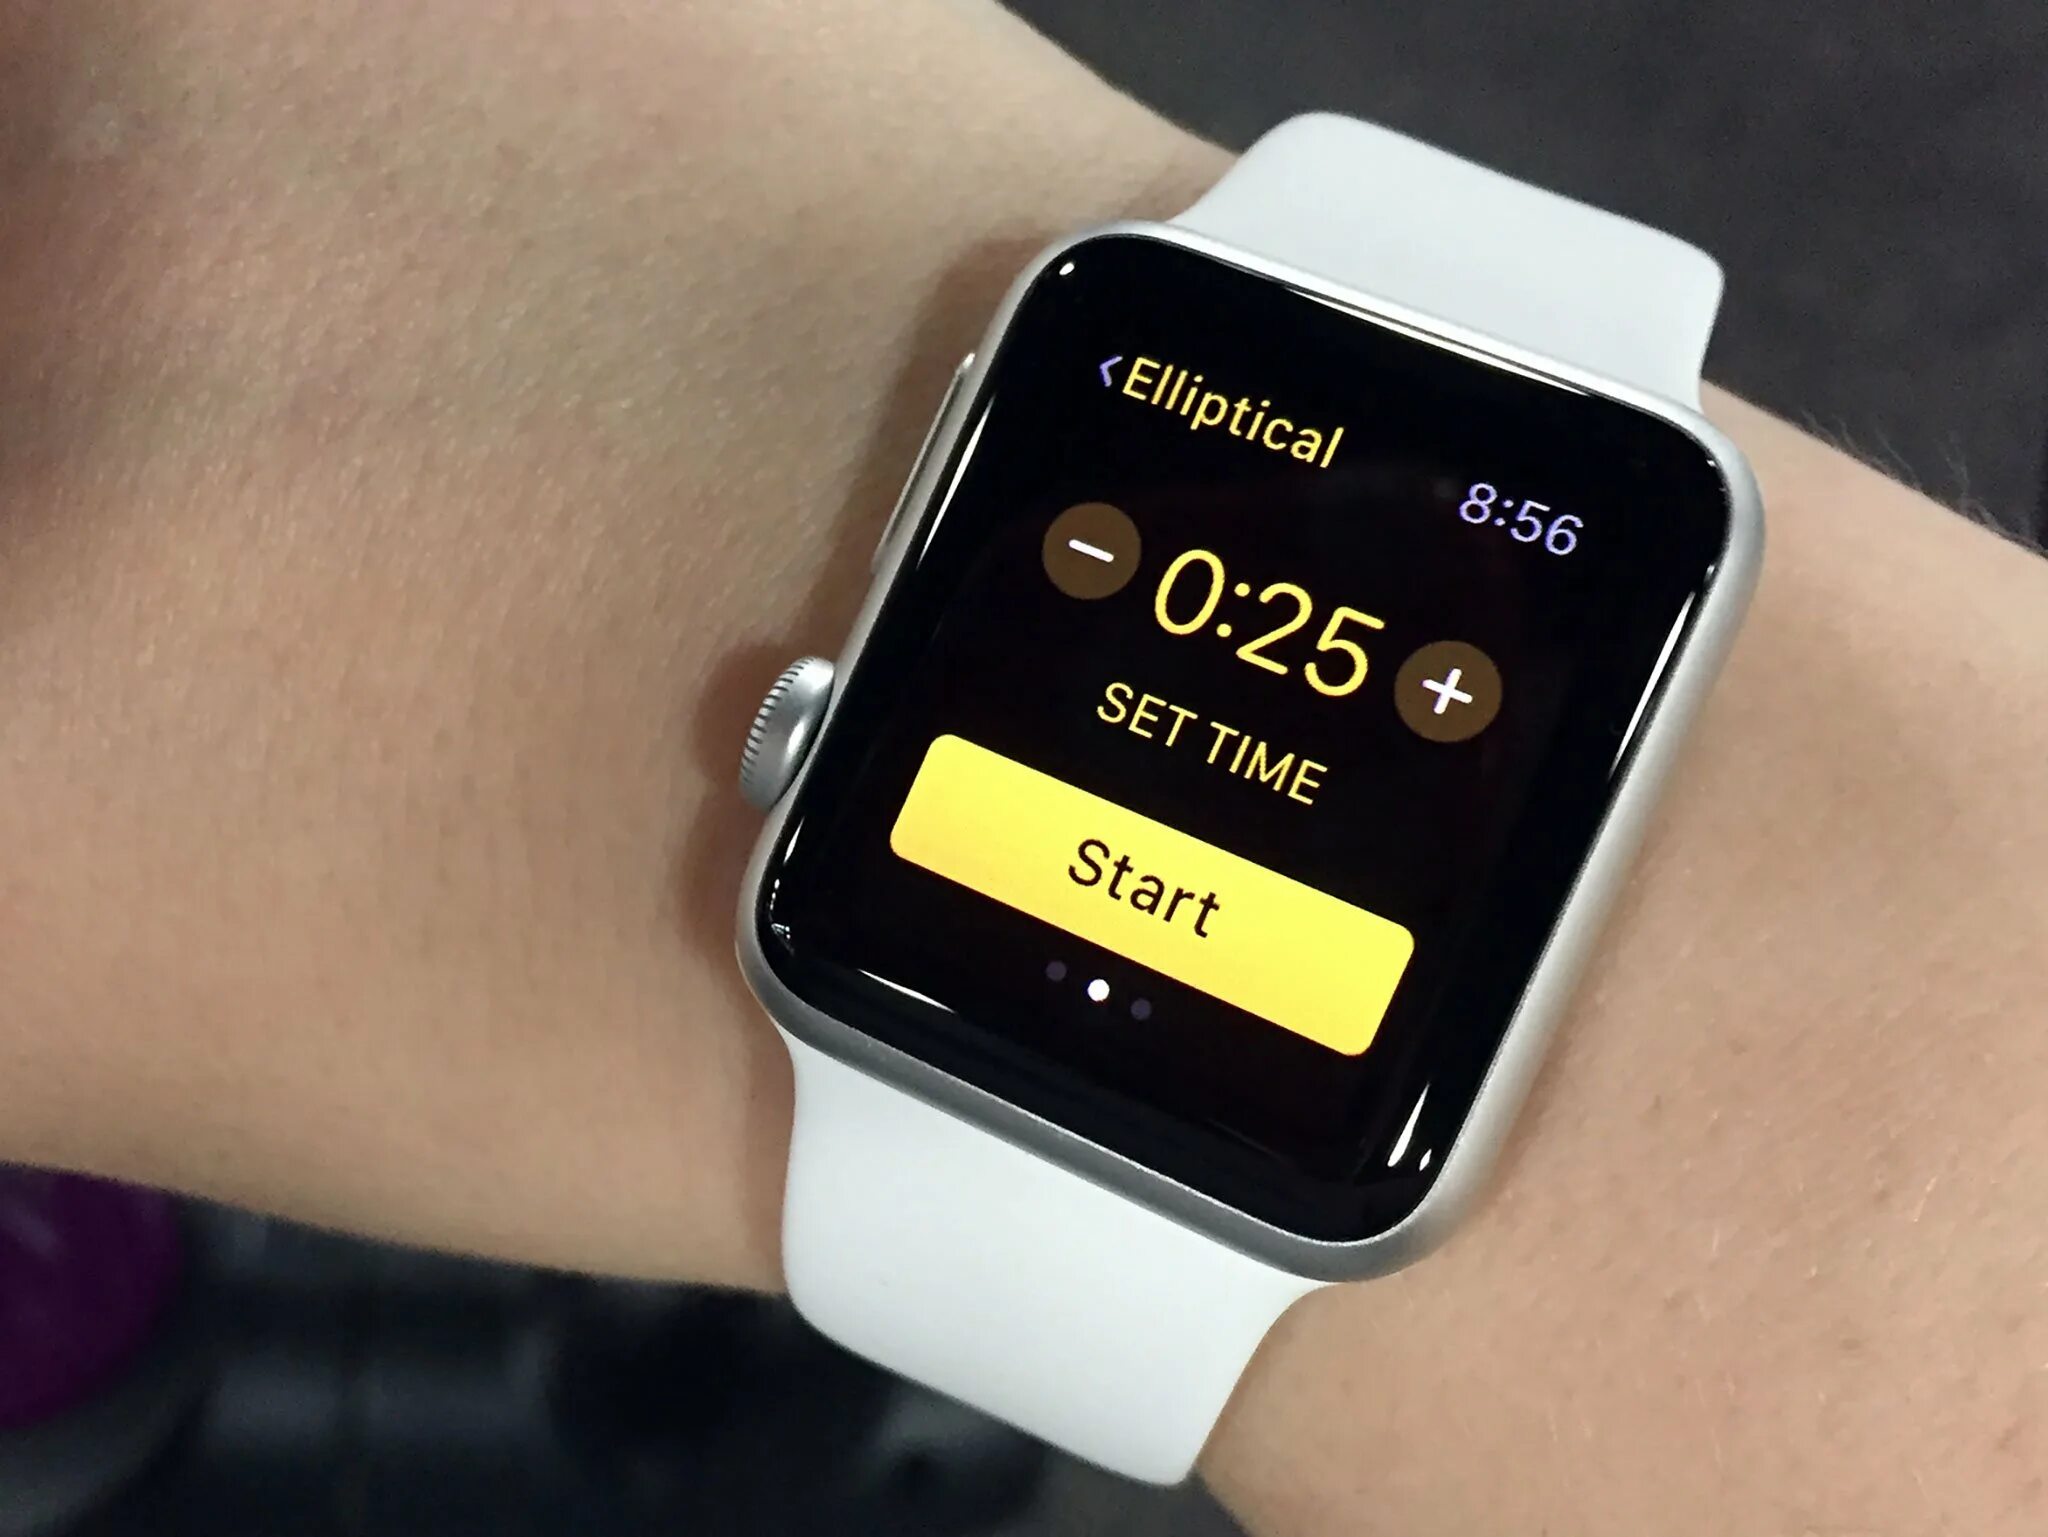 Активность часы айфон. Тренировка Apple watch. Эппл вотч активность. Apple watch Workout app. Отследить apple watch